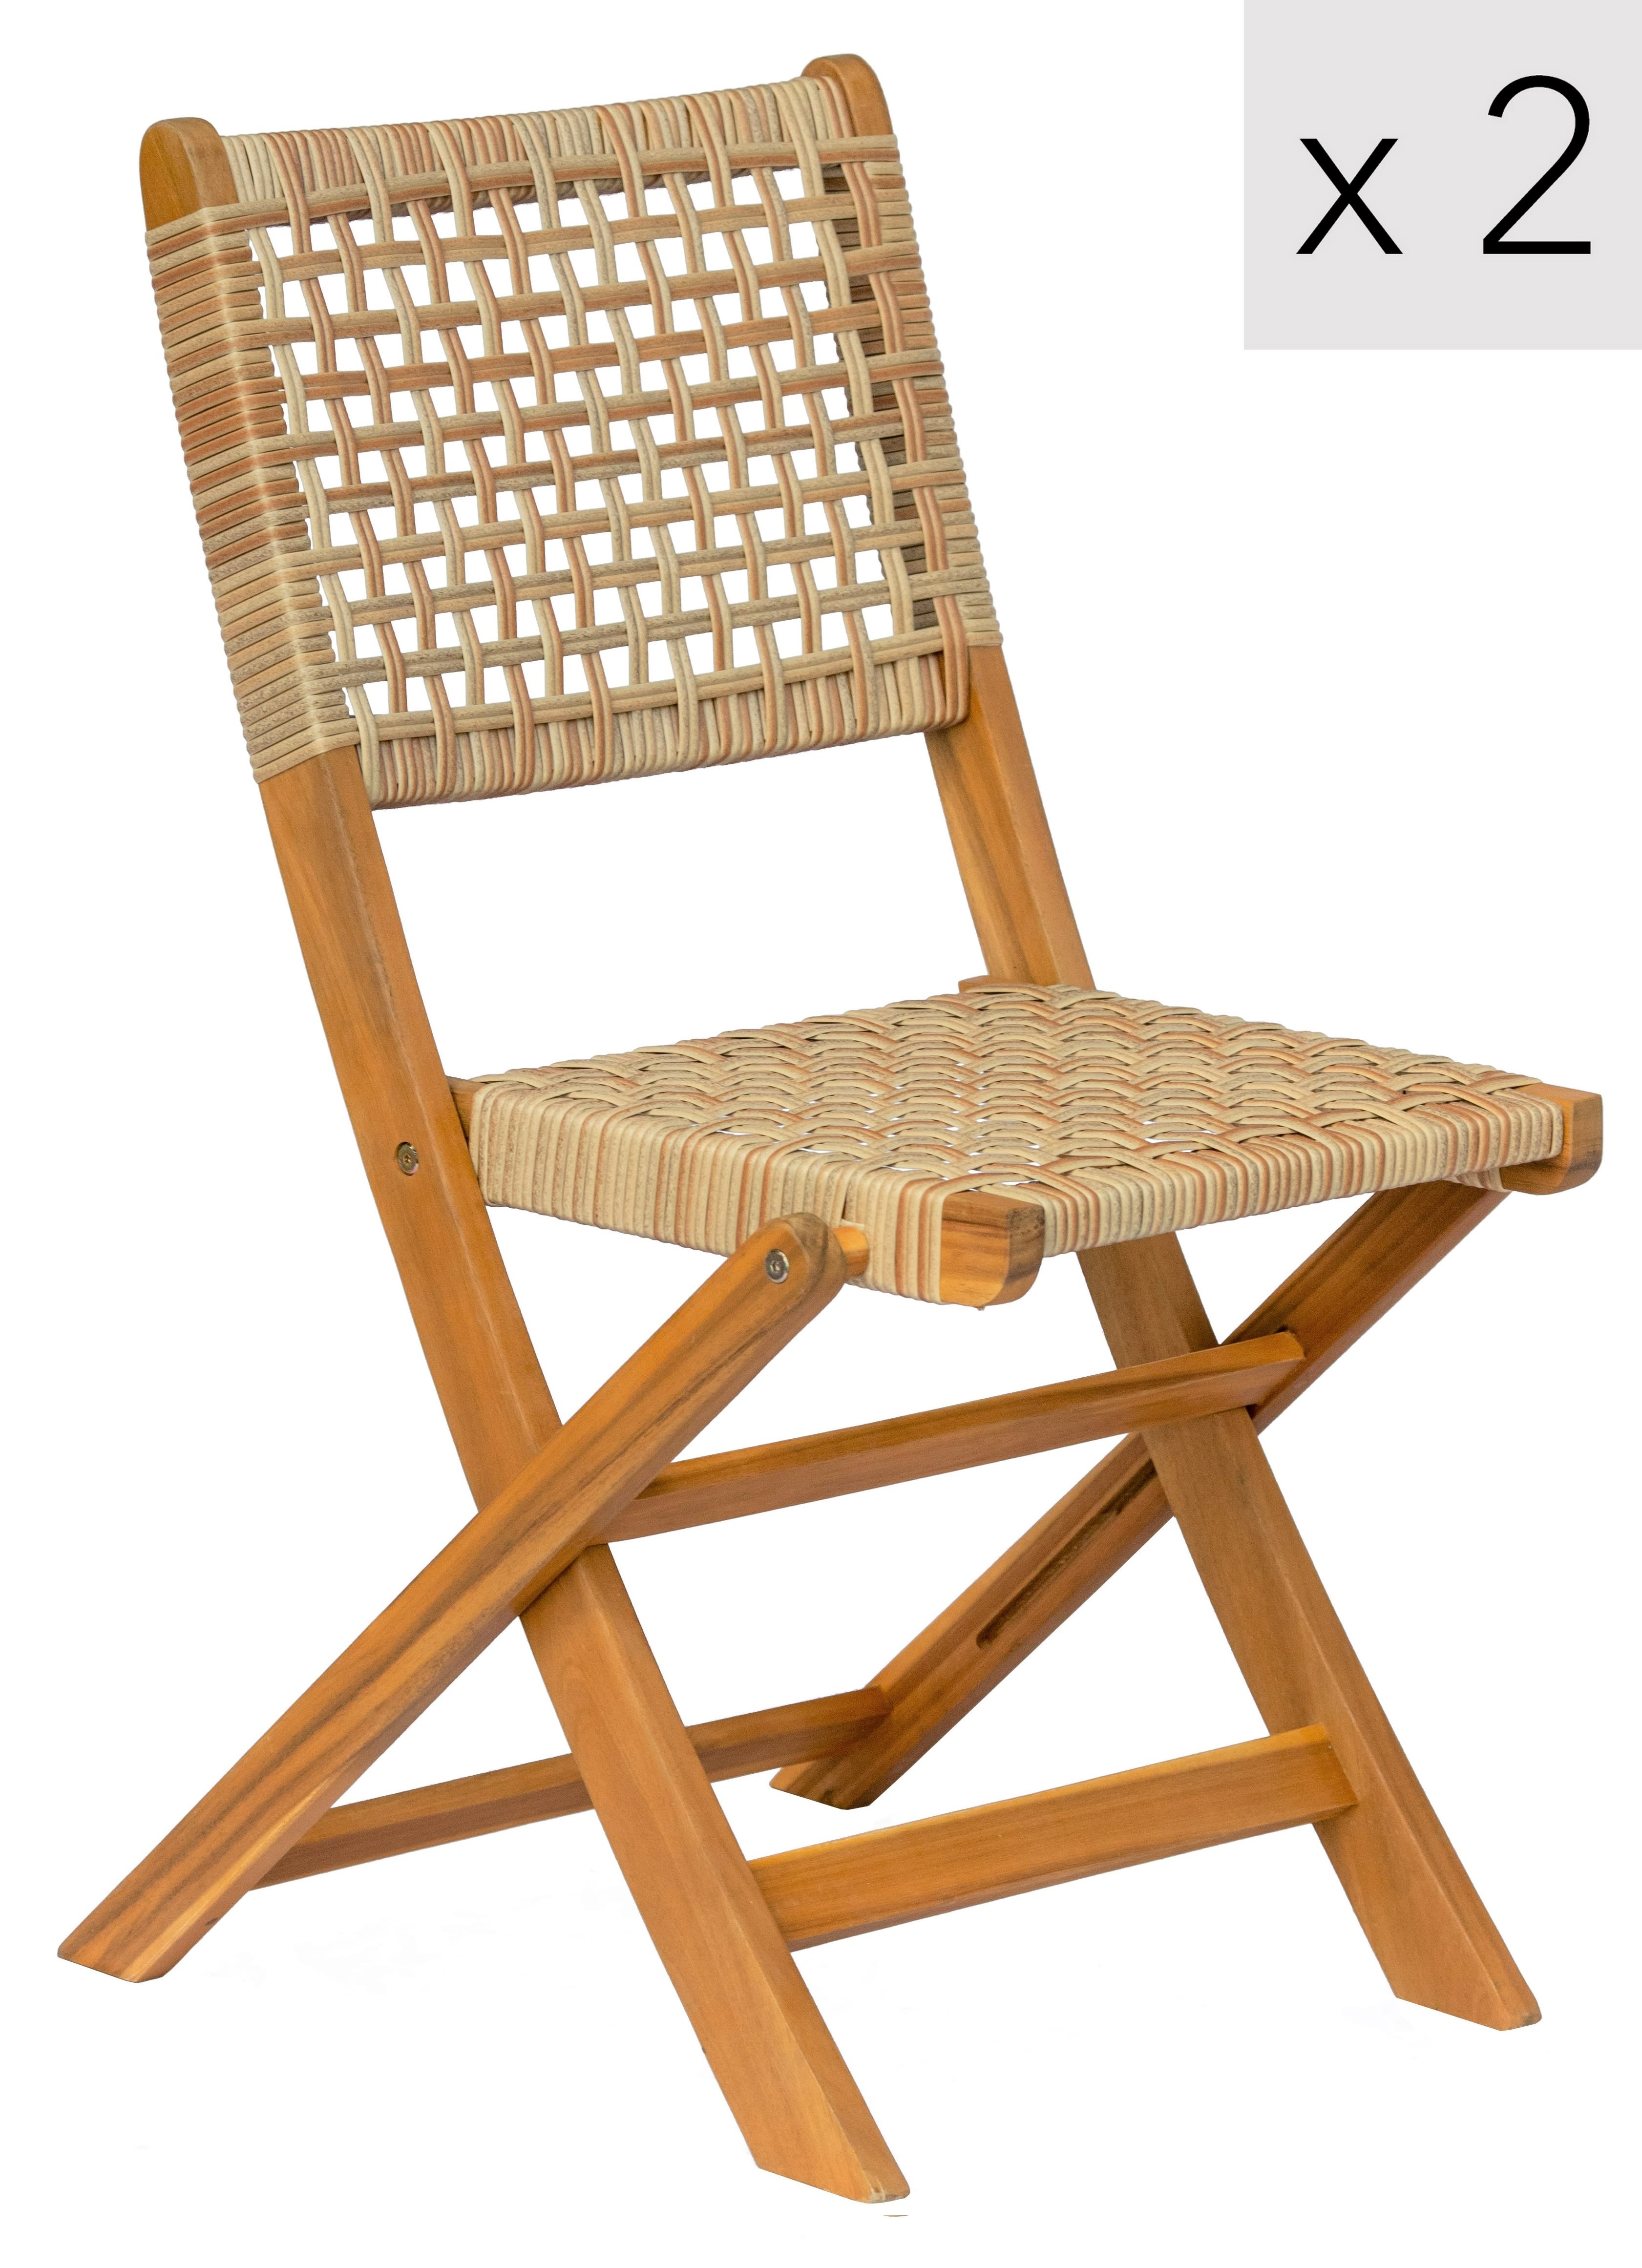 Lote de 2 sillas plegables de madera de Acacia y mimbre sintético